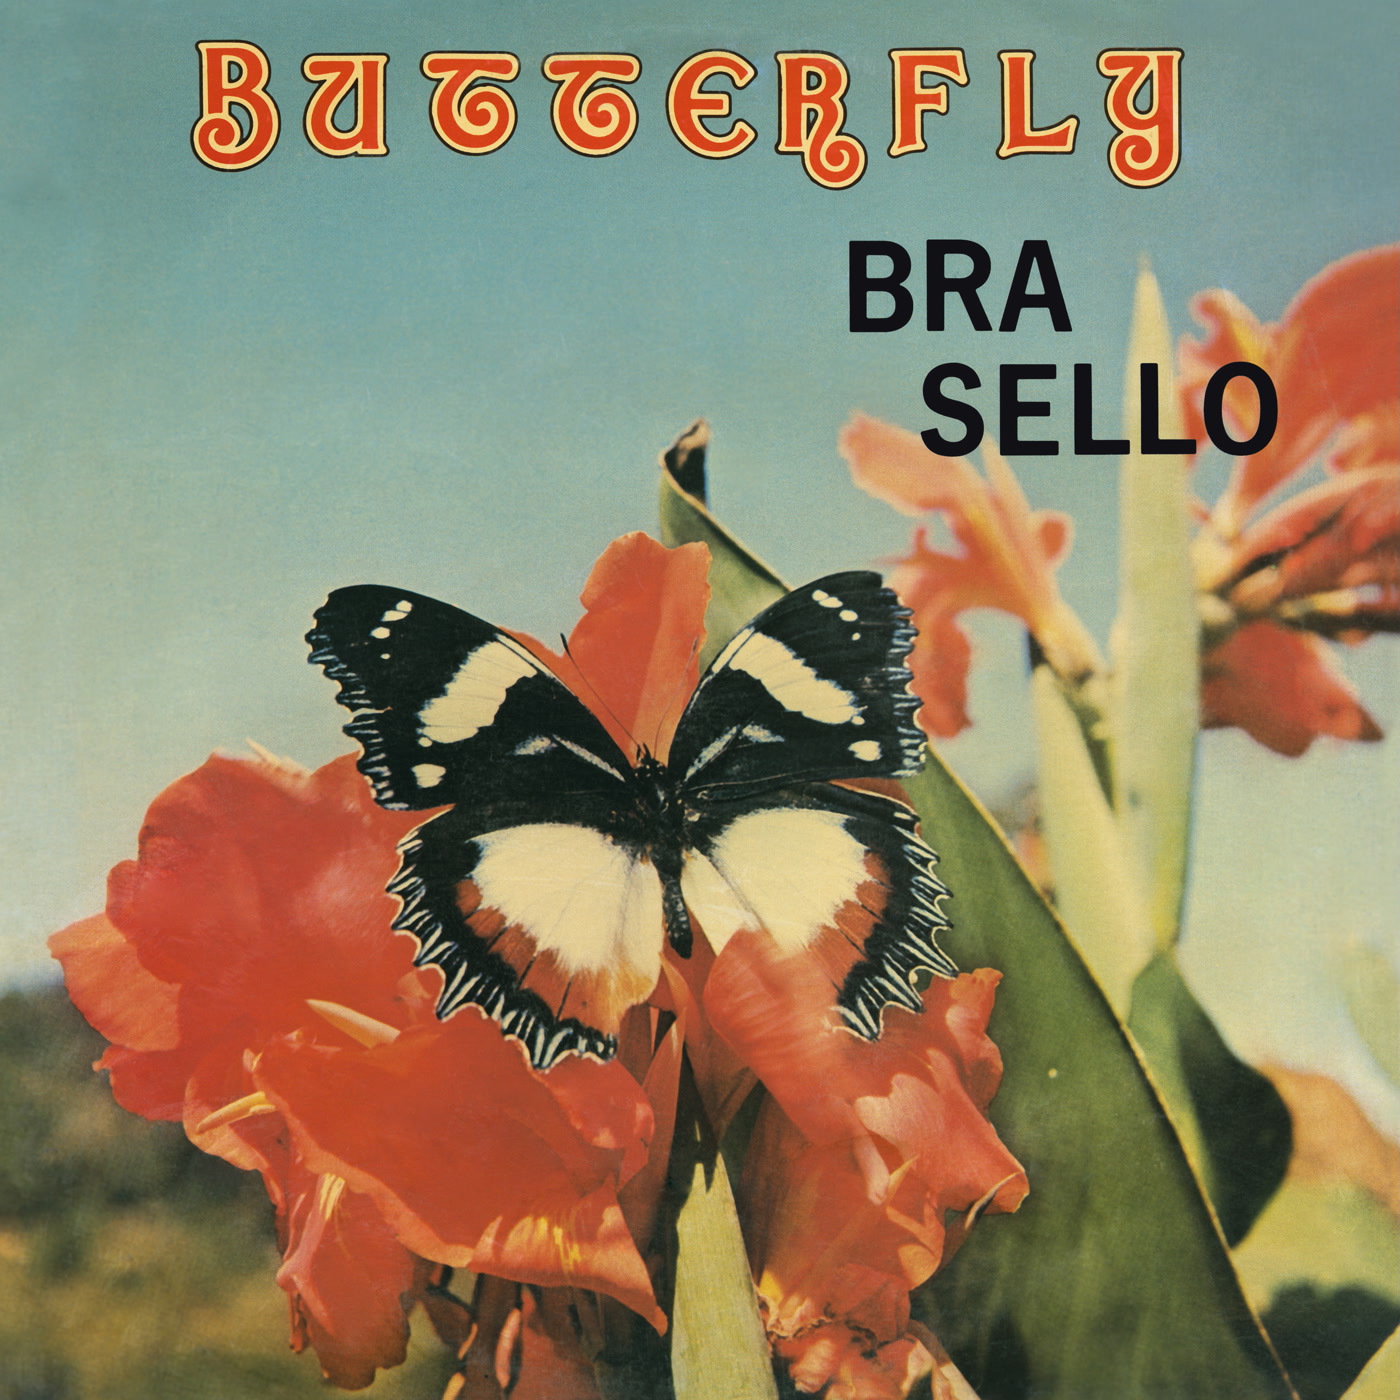 Bra Sello – Butterfly (Afrodelic)